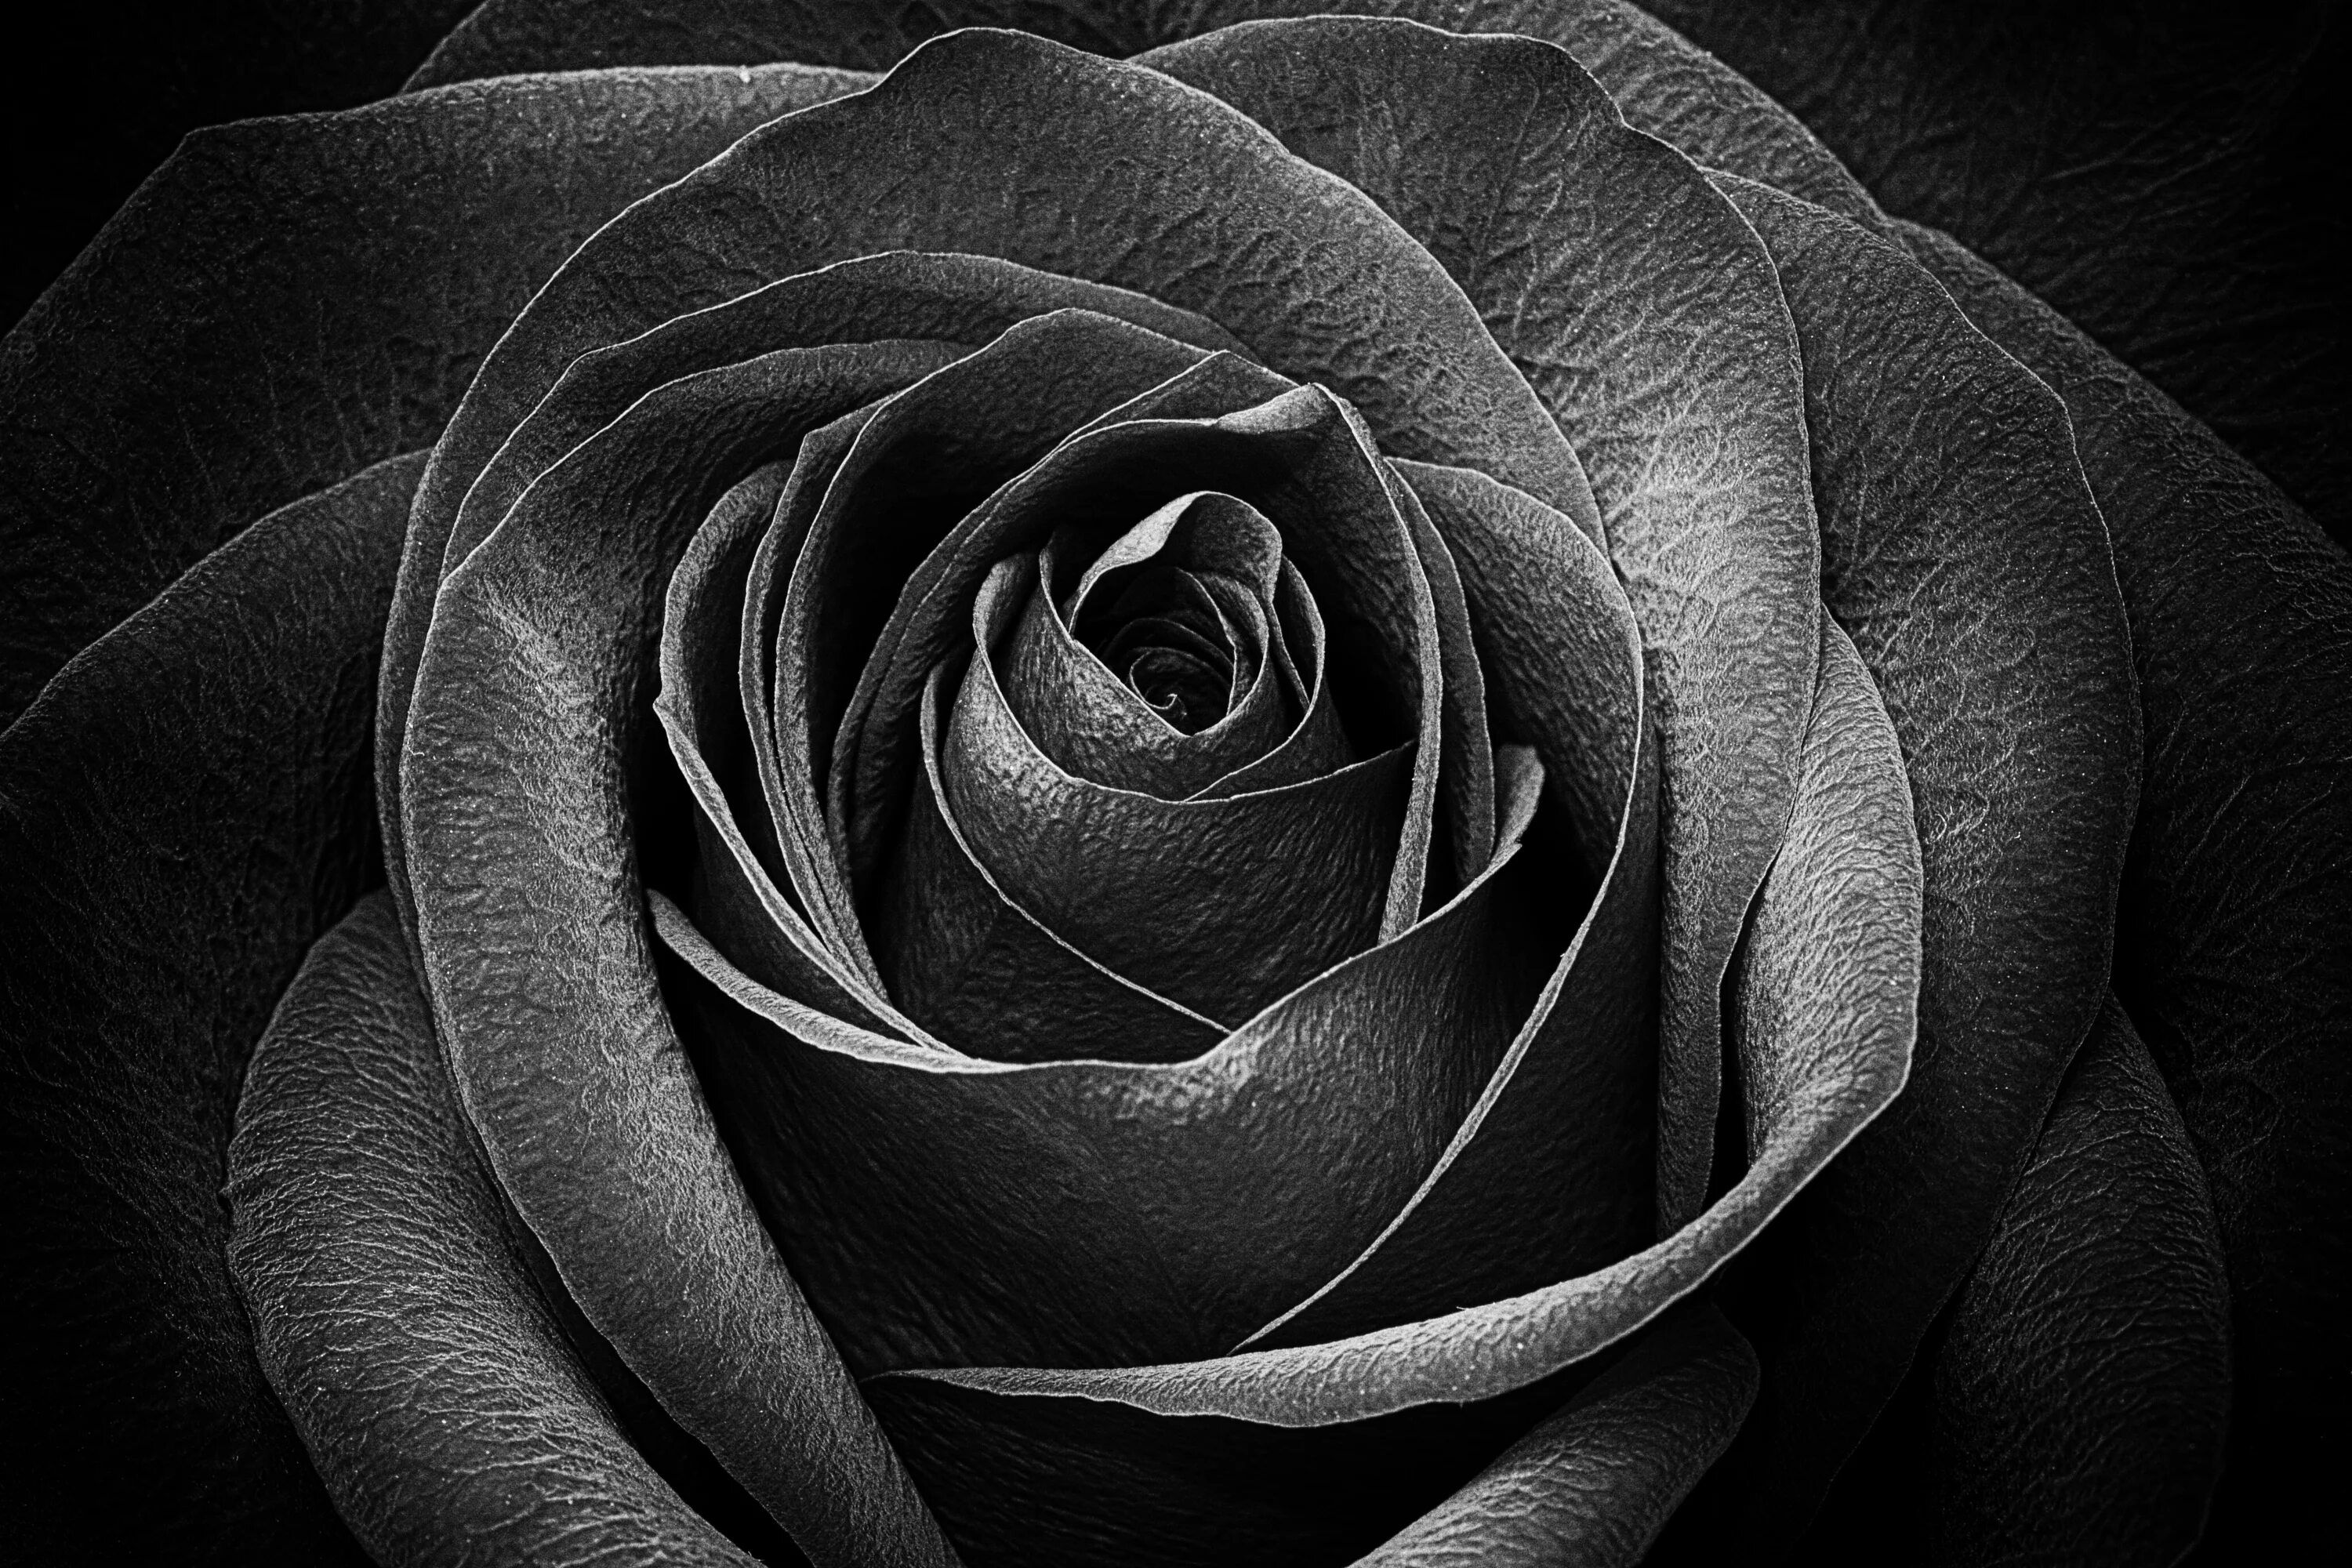 Черная розочка. Красивые черные розы.